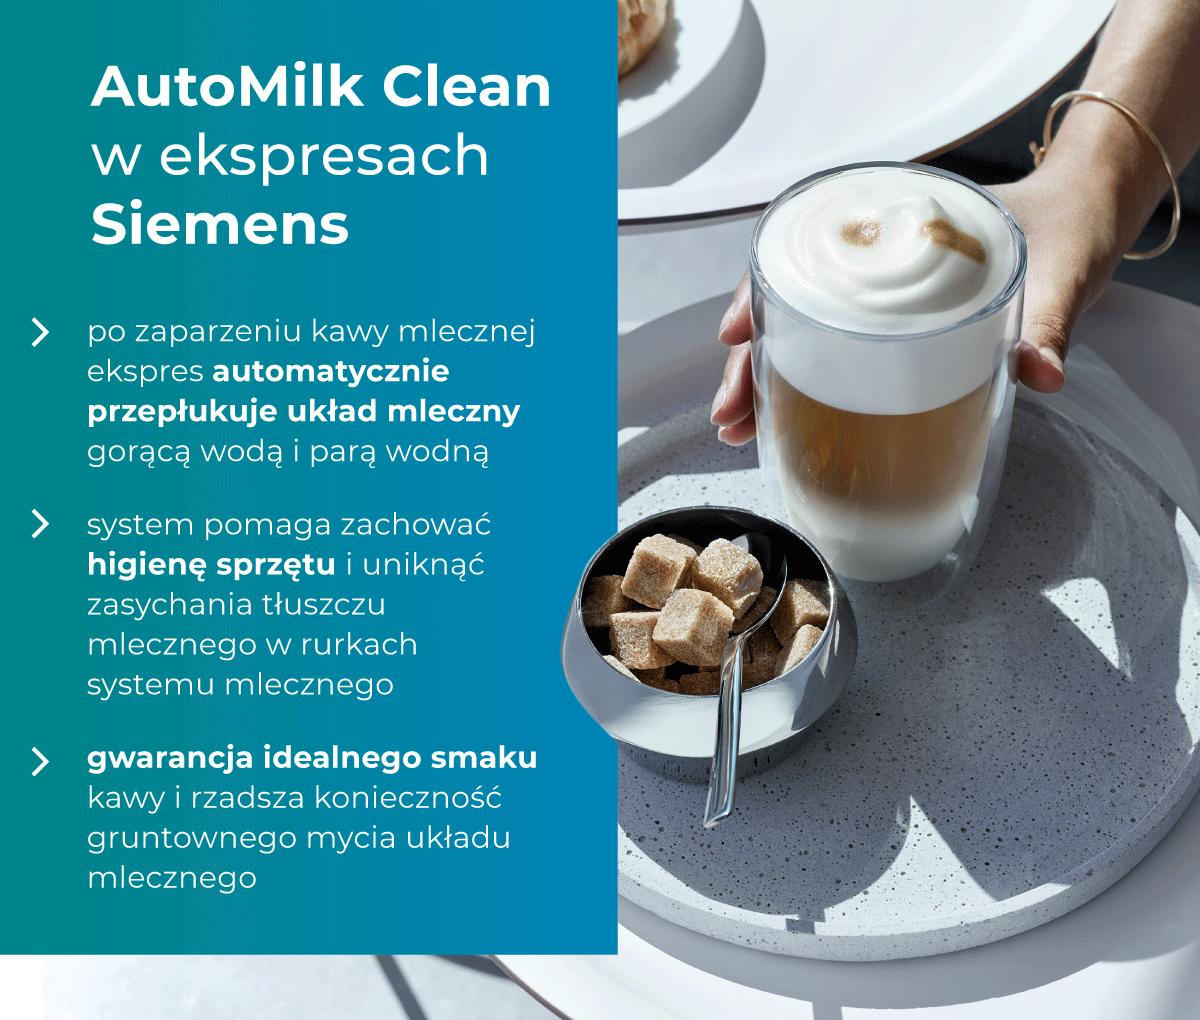 AutoMilk Clean w ekspresach Siemens - infografika